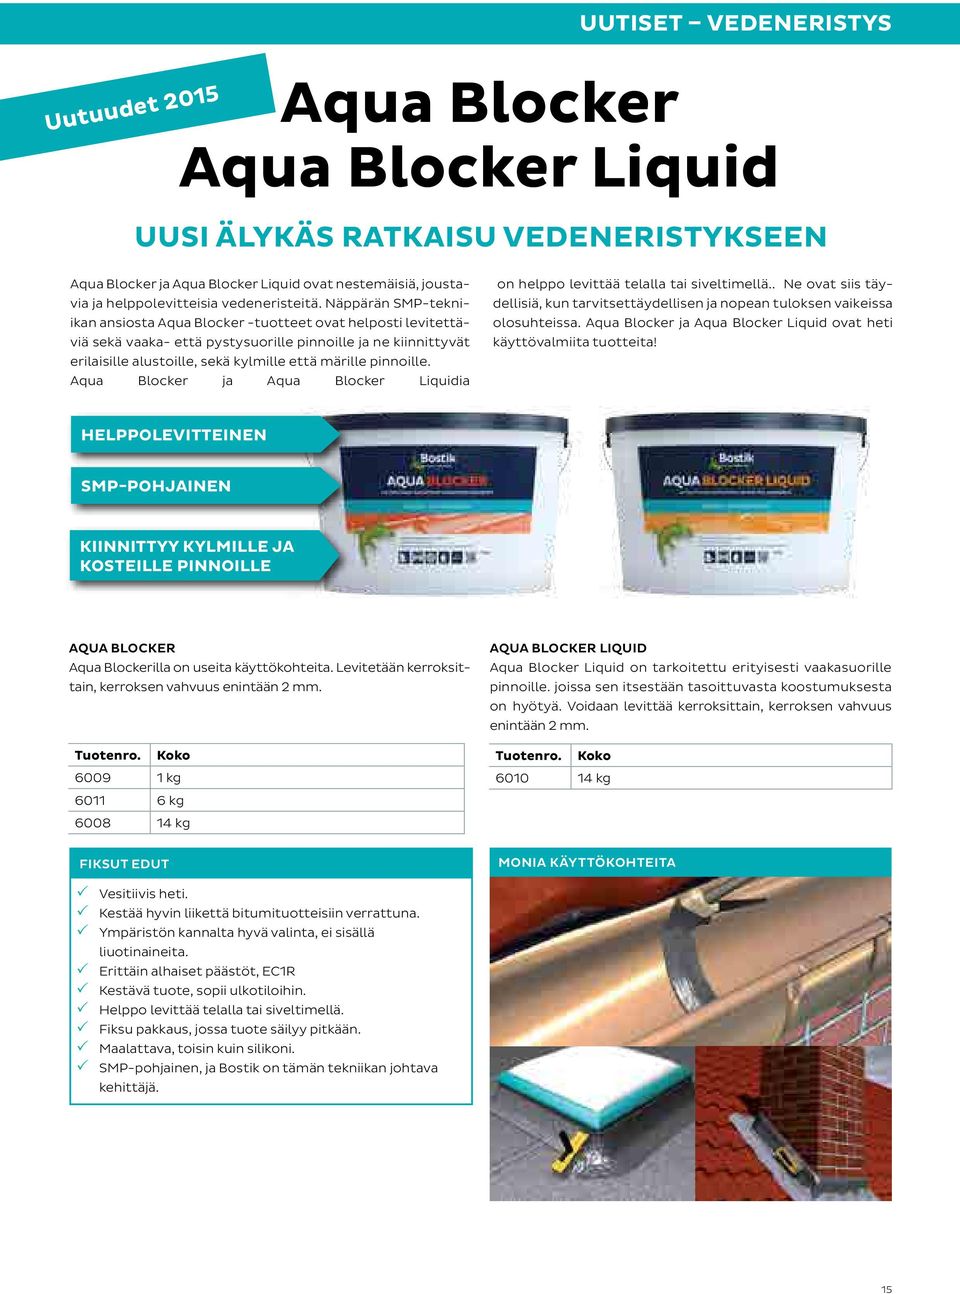 pinnoille. Aqua Blocker ja Aqua Blocker Liquidia on helppo levittää telalla tai siveltimellä.. Ne ovat siis täydellisiä, kun tarvitsettäydellisen ja nopean tuloksen vaikeissa olosuhteissa.